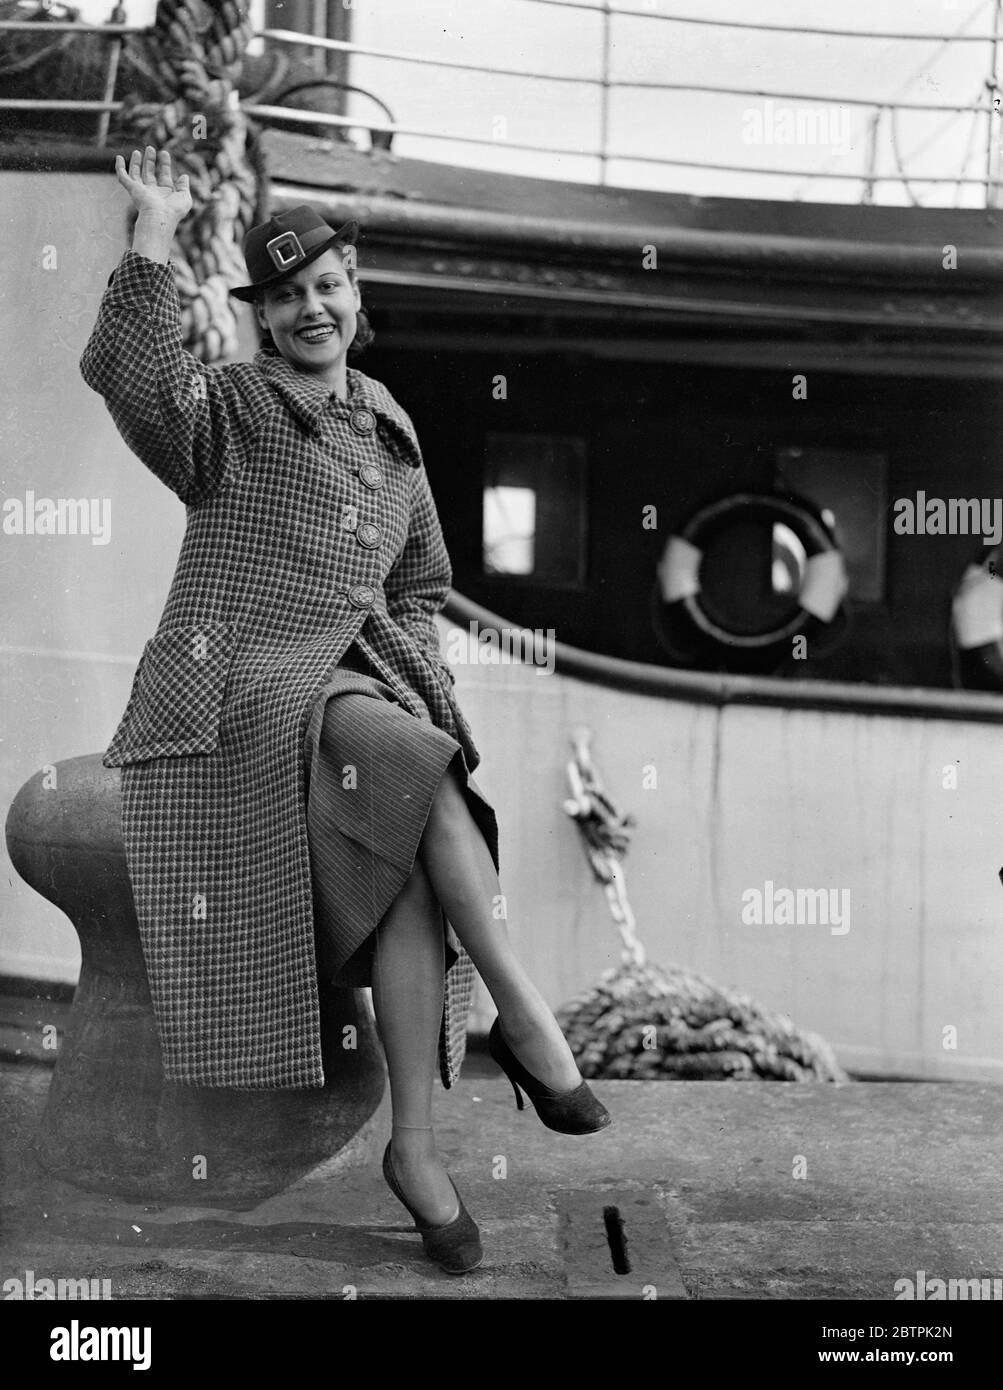 American Blues Singer ici . Mlle Carolyn Marsh , la chanteuse de blues américaine , est arrivée à Southampton à bord de Brême en provenance des États-Unis, accompagnée de son mari, M. Jose E Nieto . Photos , Mlle Carolyn Marsh à l'arrivée à Southampton . 10 mars 1936 Banque D'Images